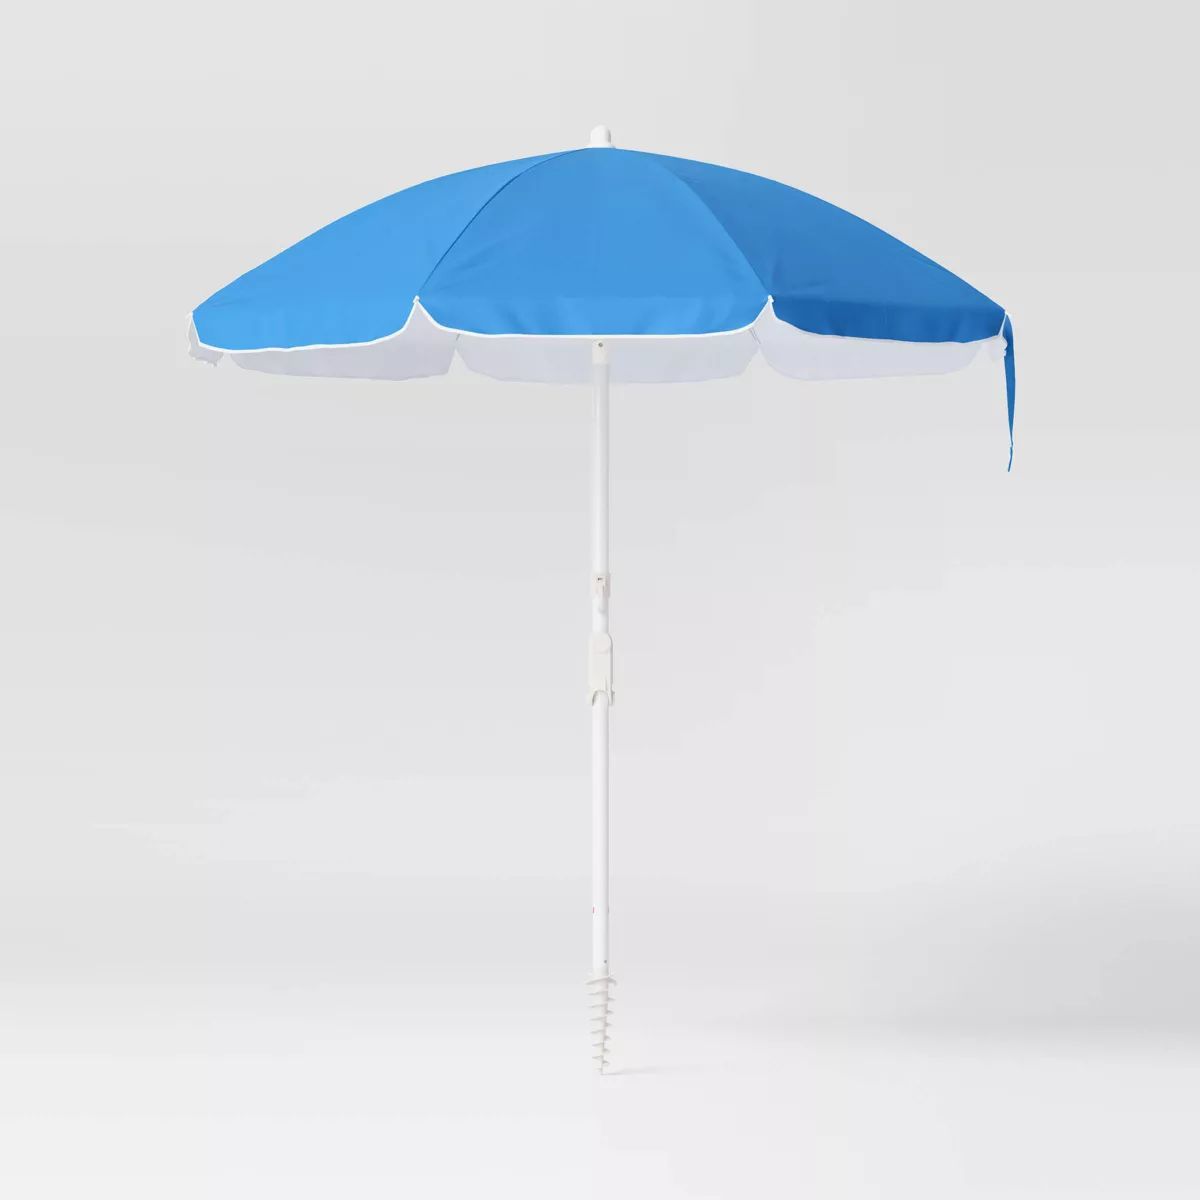 6.5'x6.5' Round Outdoor Patio Beach Umbrella Blue - Sun Squad™ | Target